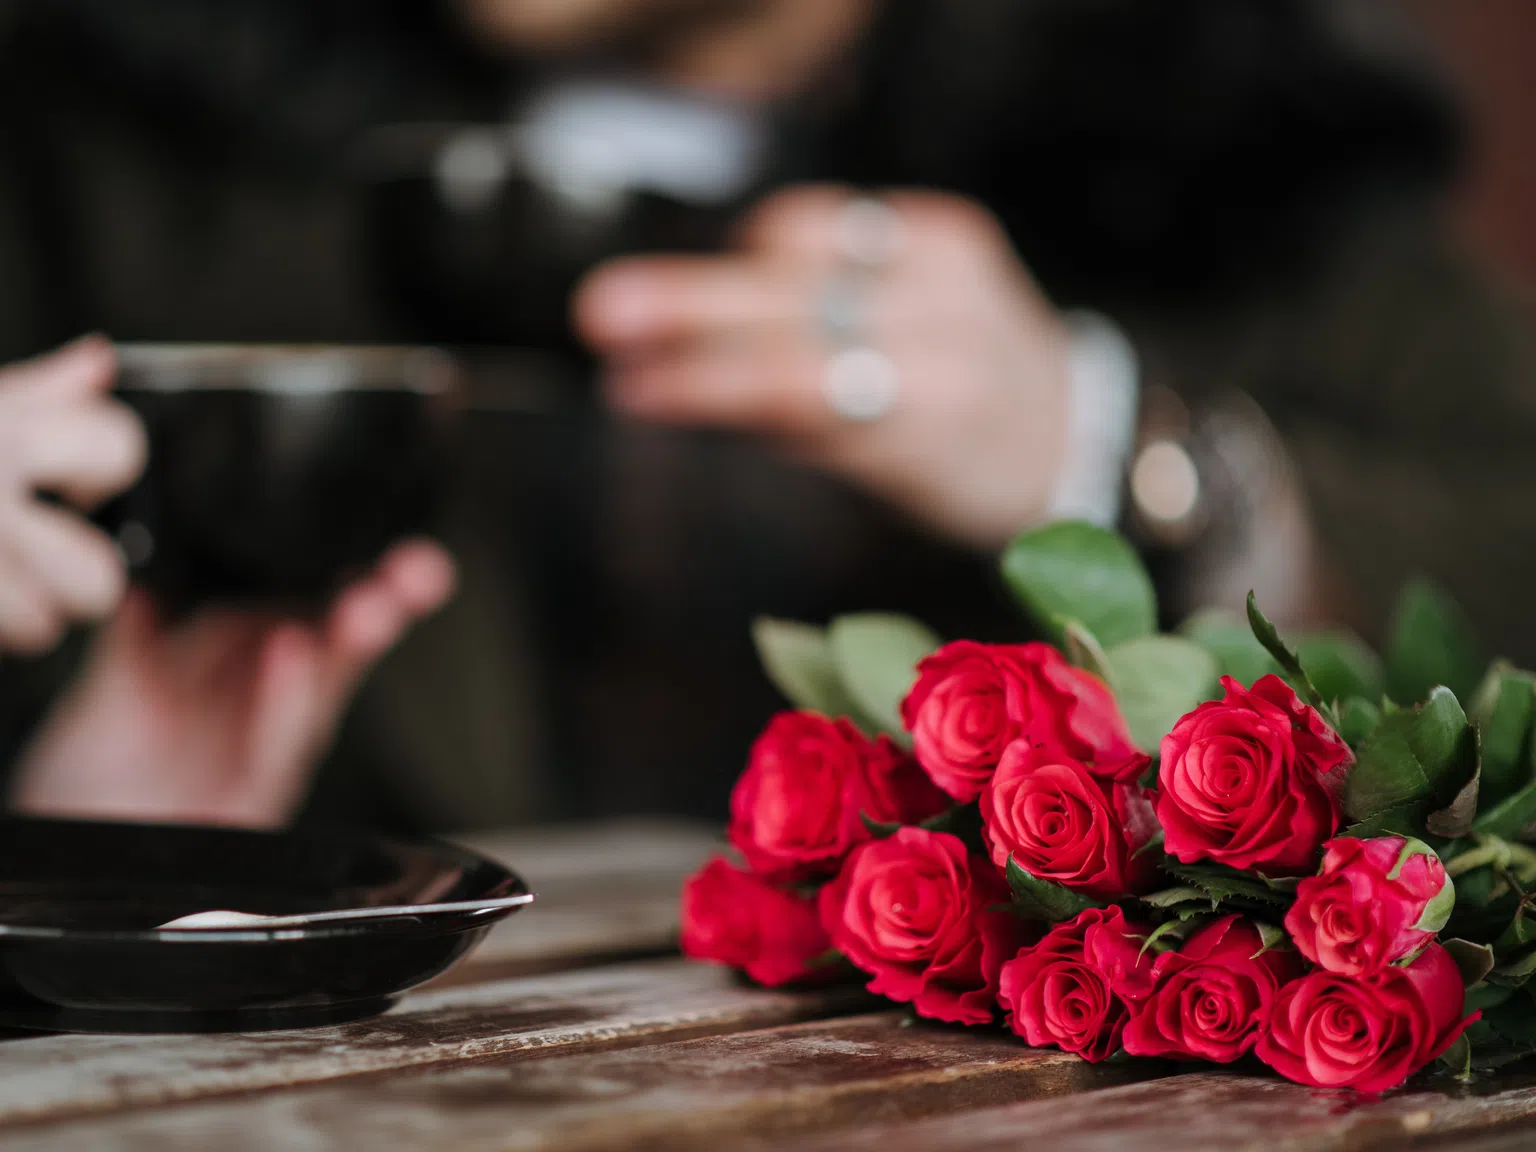 Трябва ли мъжът да подарява цветя на жена си без повод?